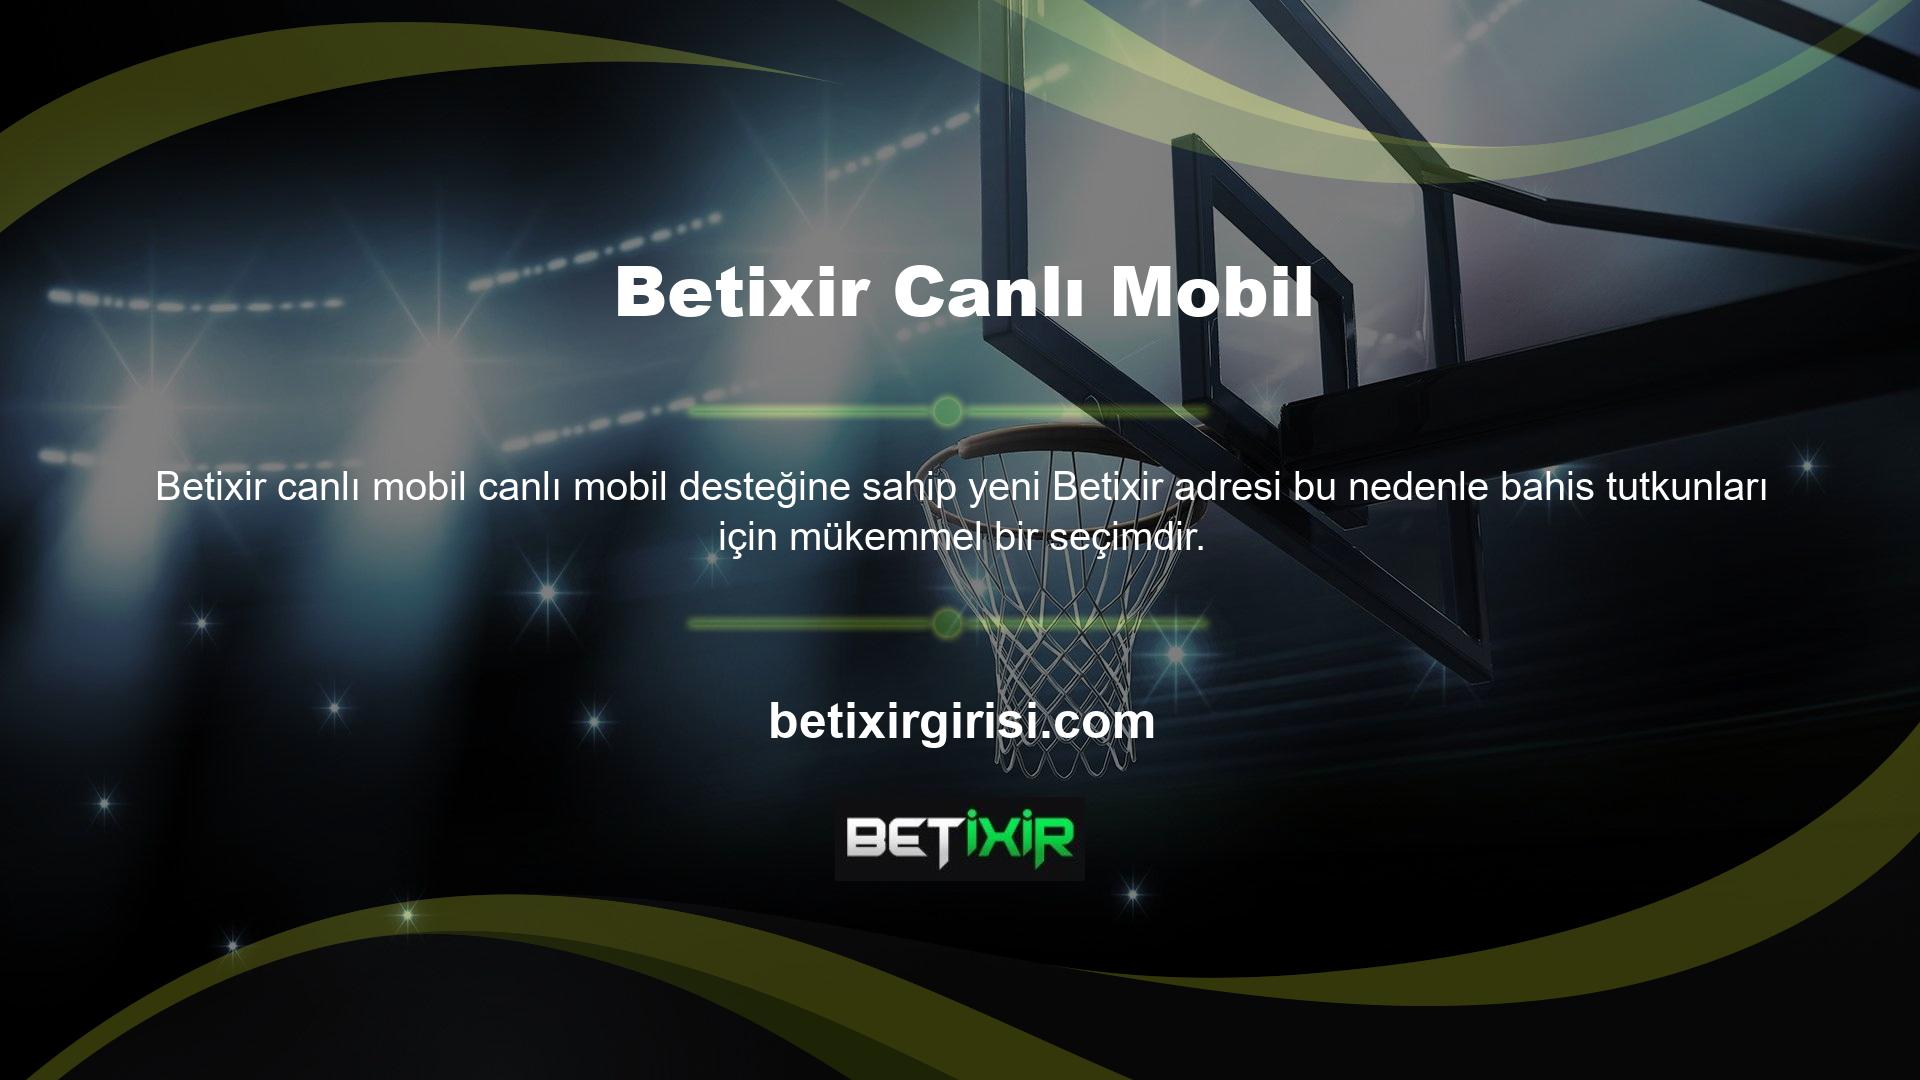 Yeni adresle Betixir mobil desteğine herhangi bir sorun veya bağlantı sorunu olmadan her yerden erişilebiliyor